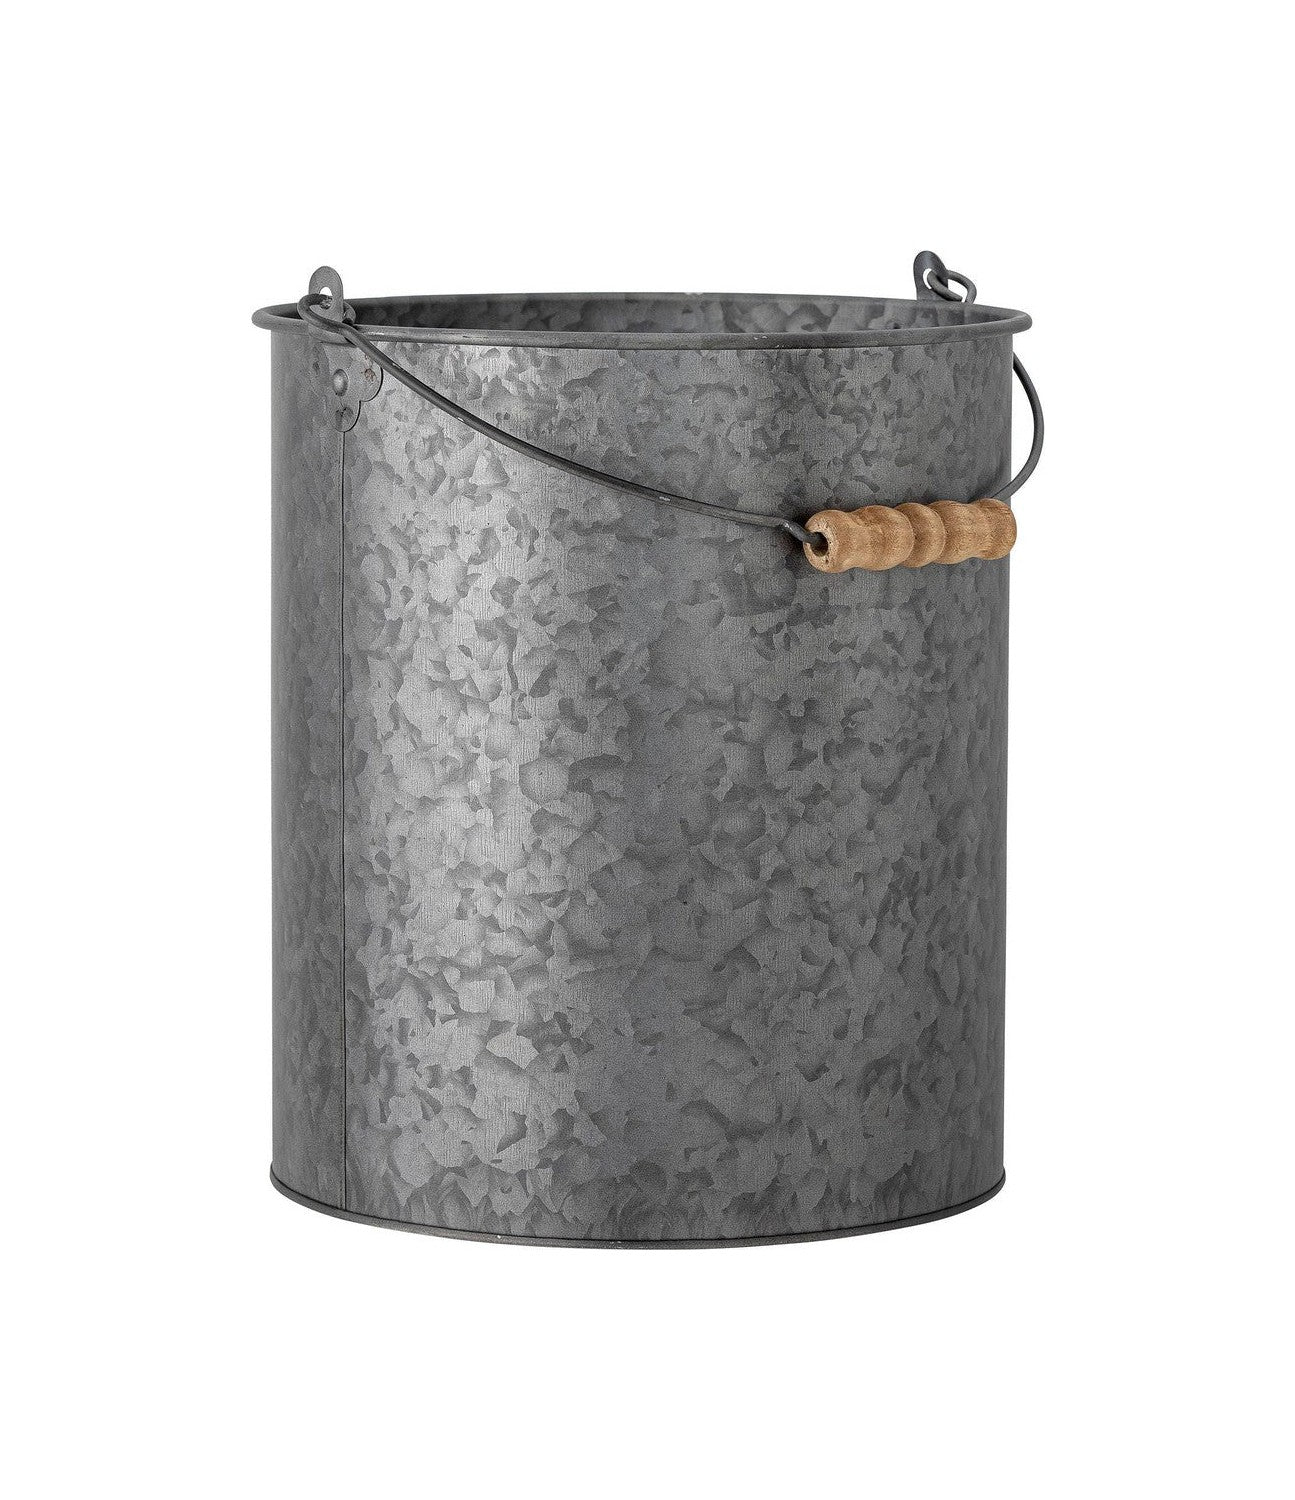 Bloomingville Dusan Bucket, gris, metal